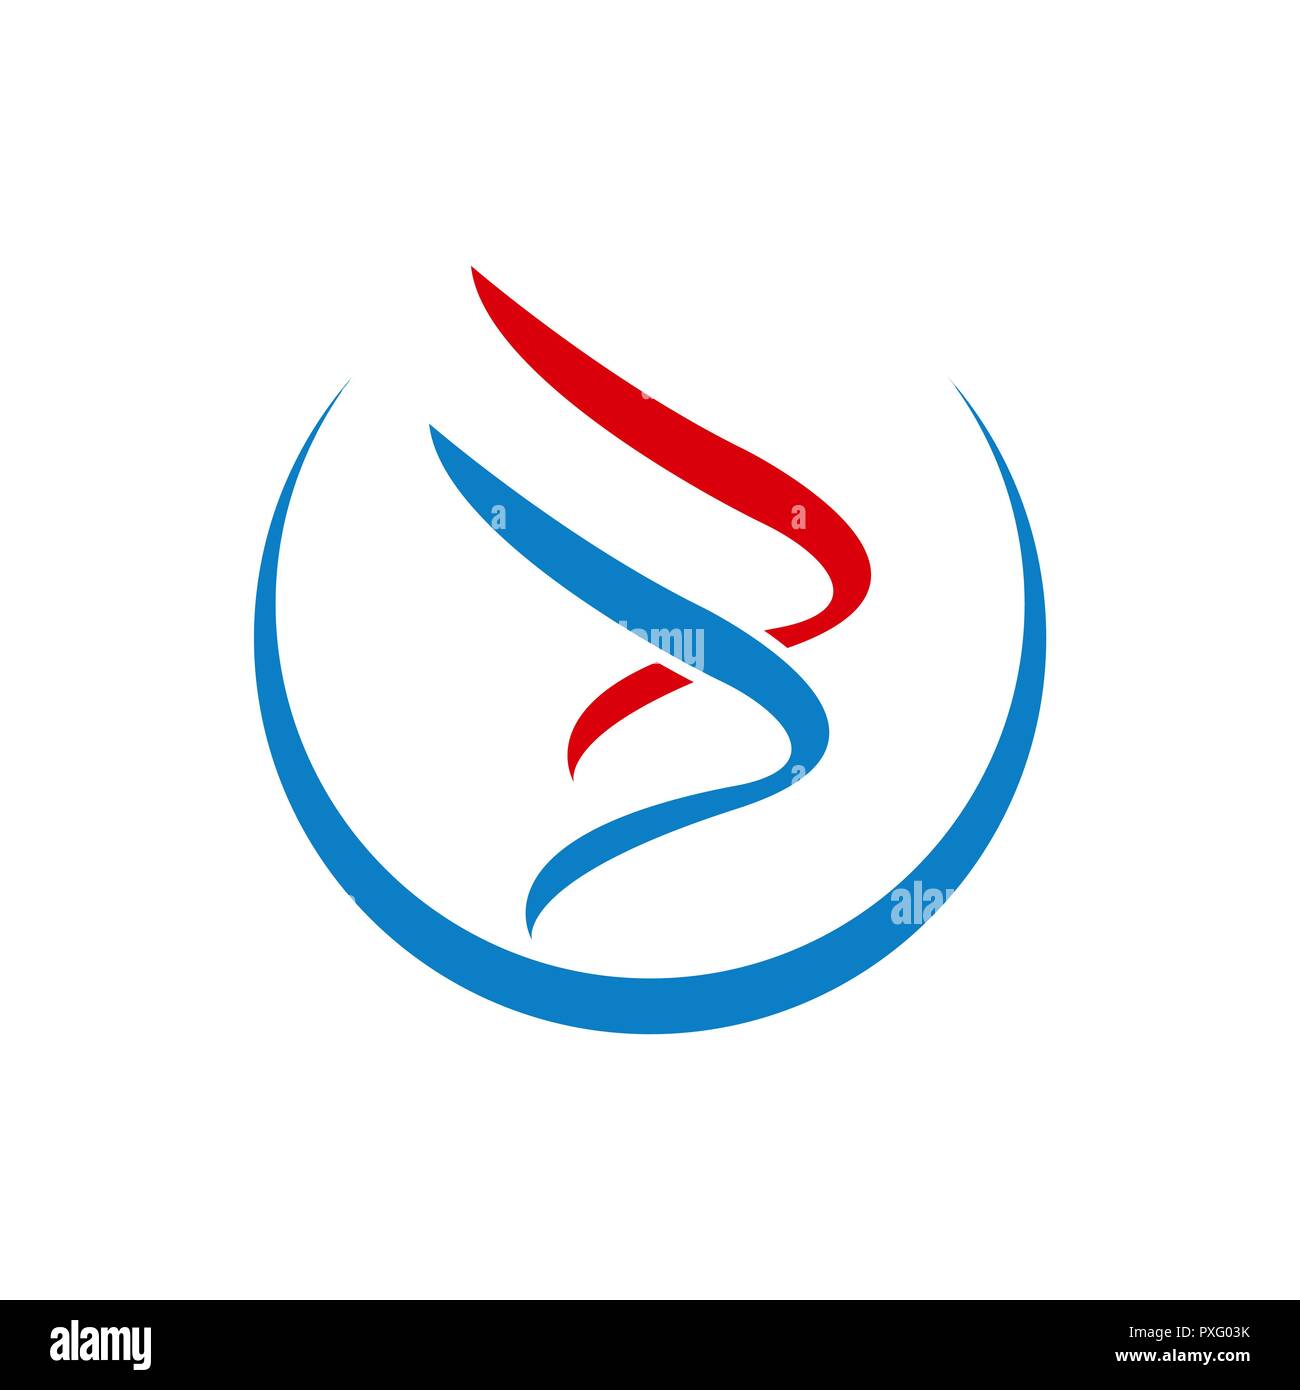 Swoosh logo aile de luxe avec modèle couleur rouge bleu Illustration de Vecteur